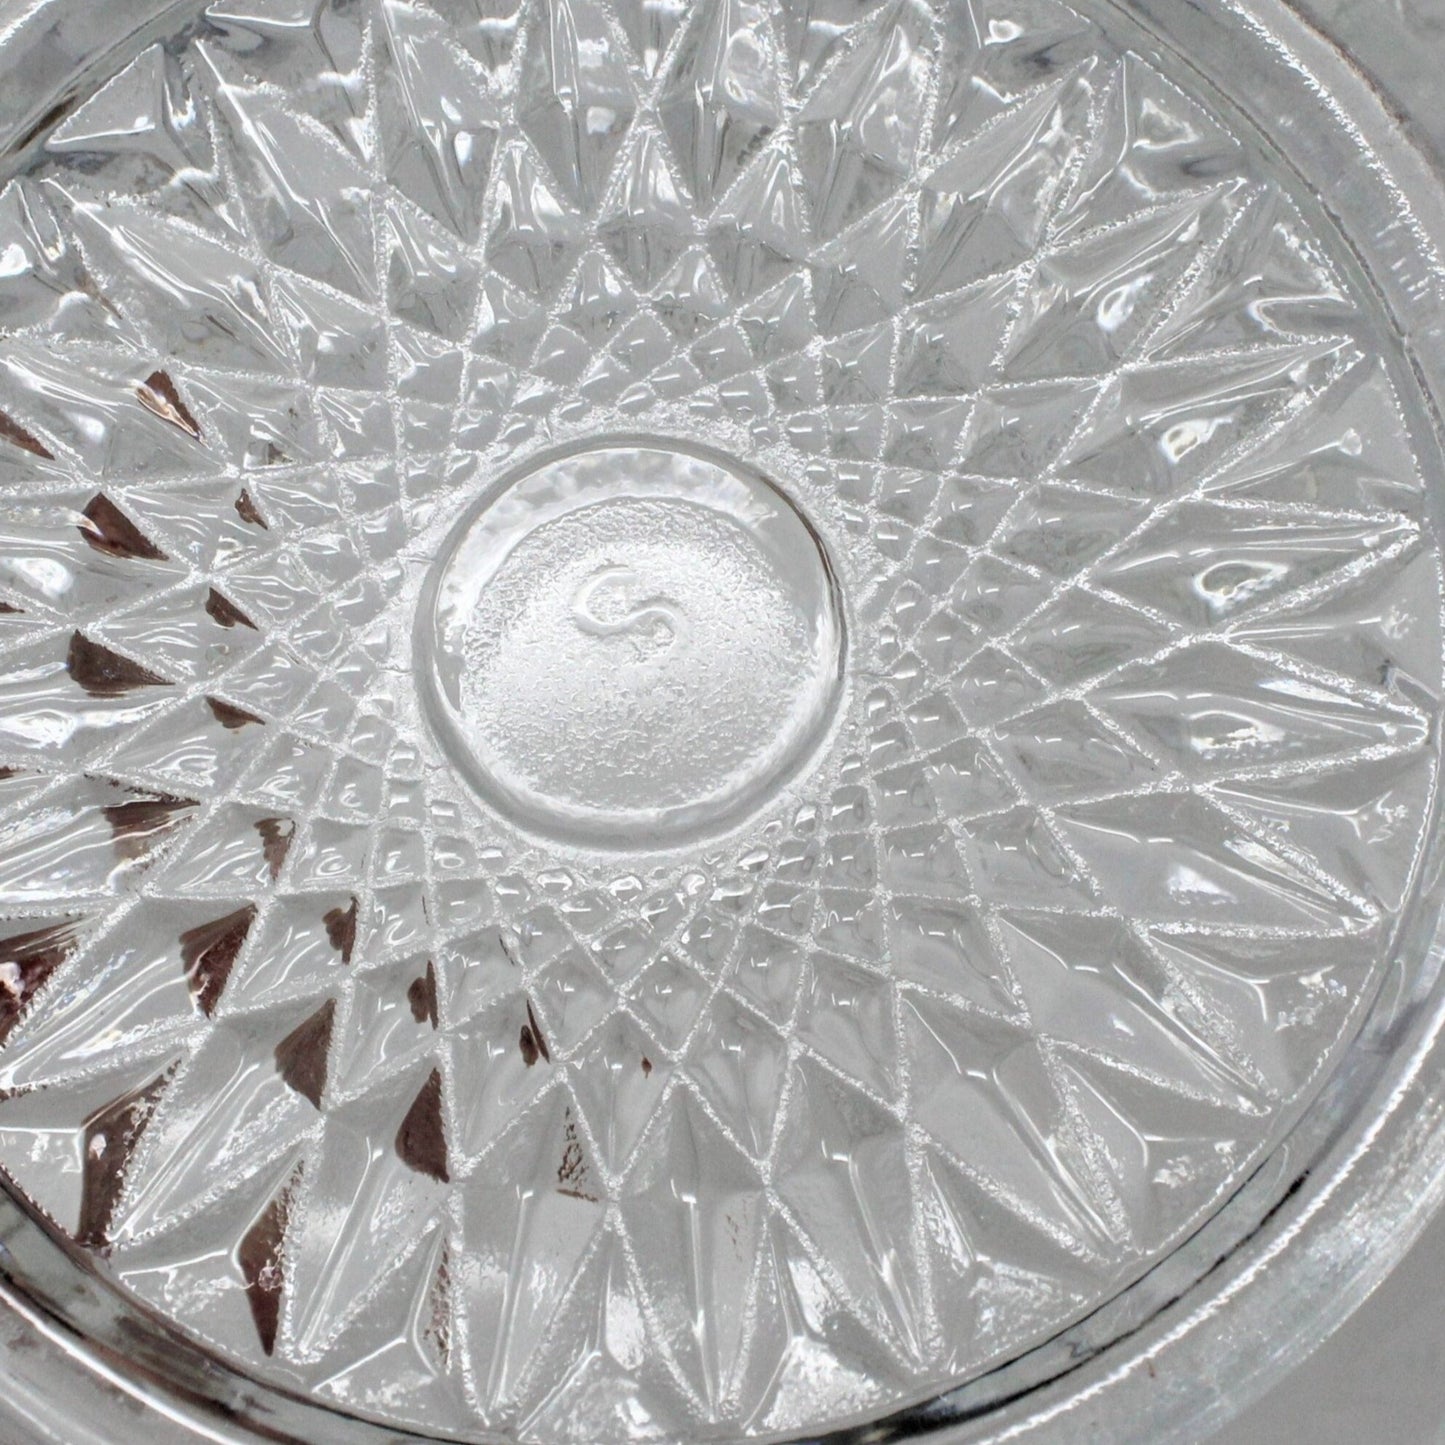 Basket, L.E. Smith Glass, Quintec 3185 Clear, Vintage, Depression Glass